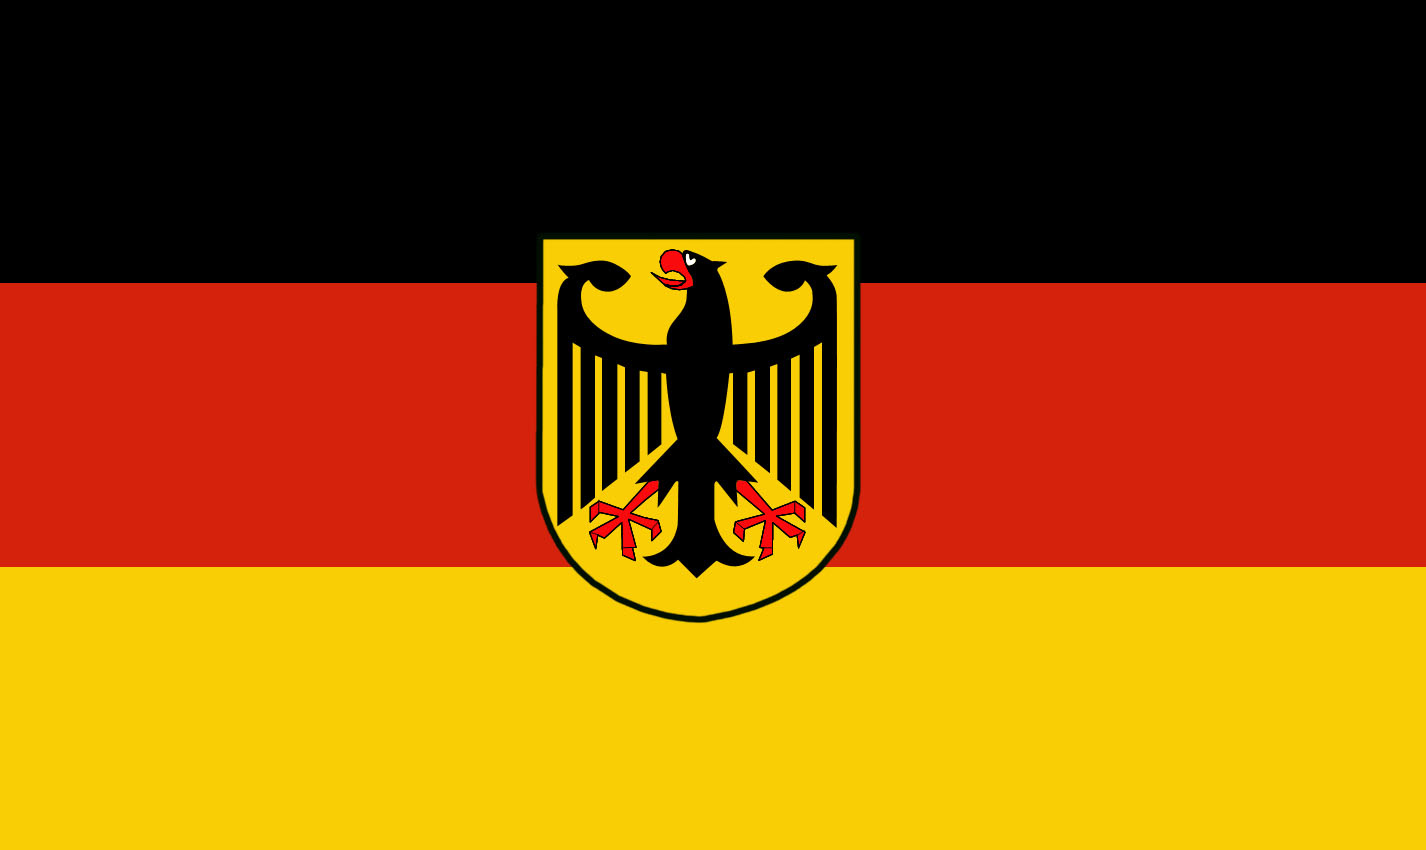 Fahnen Deutschland